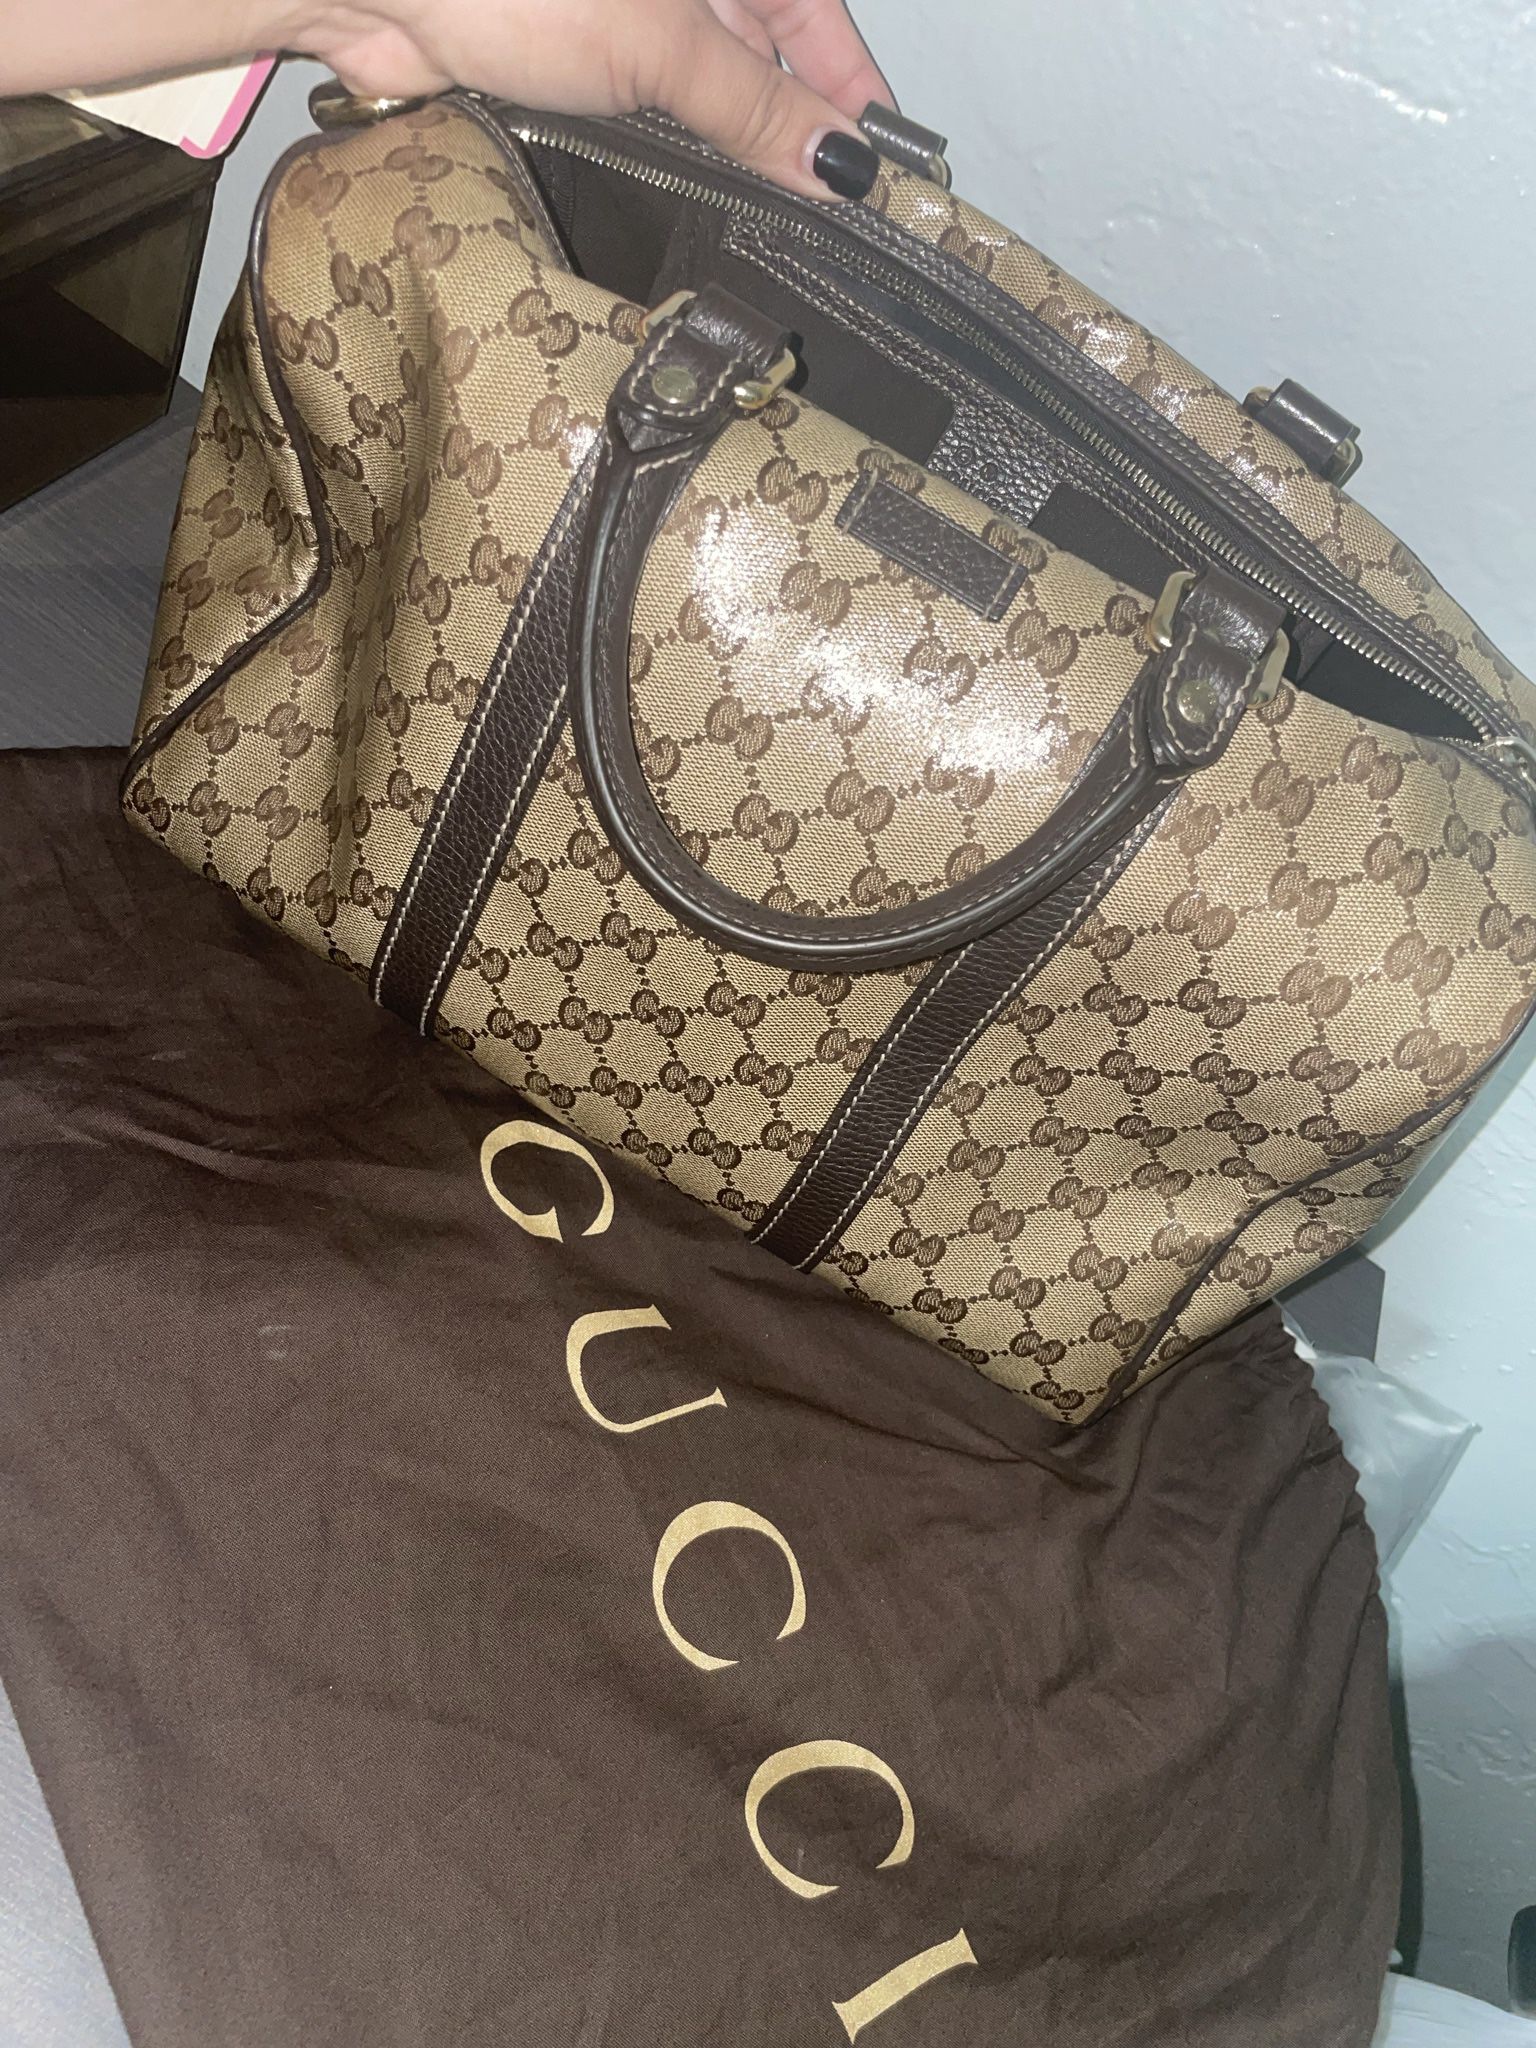 Gucci Dionysus Super Mini Bag for Sale in Miami Beach, FL - OfferUp